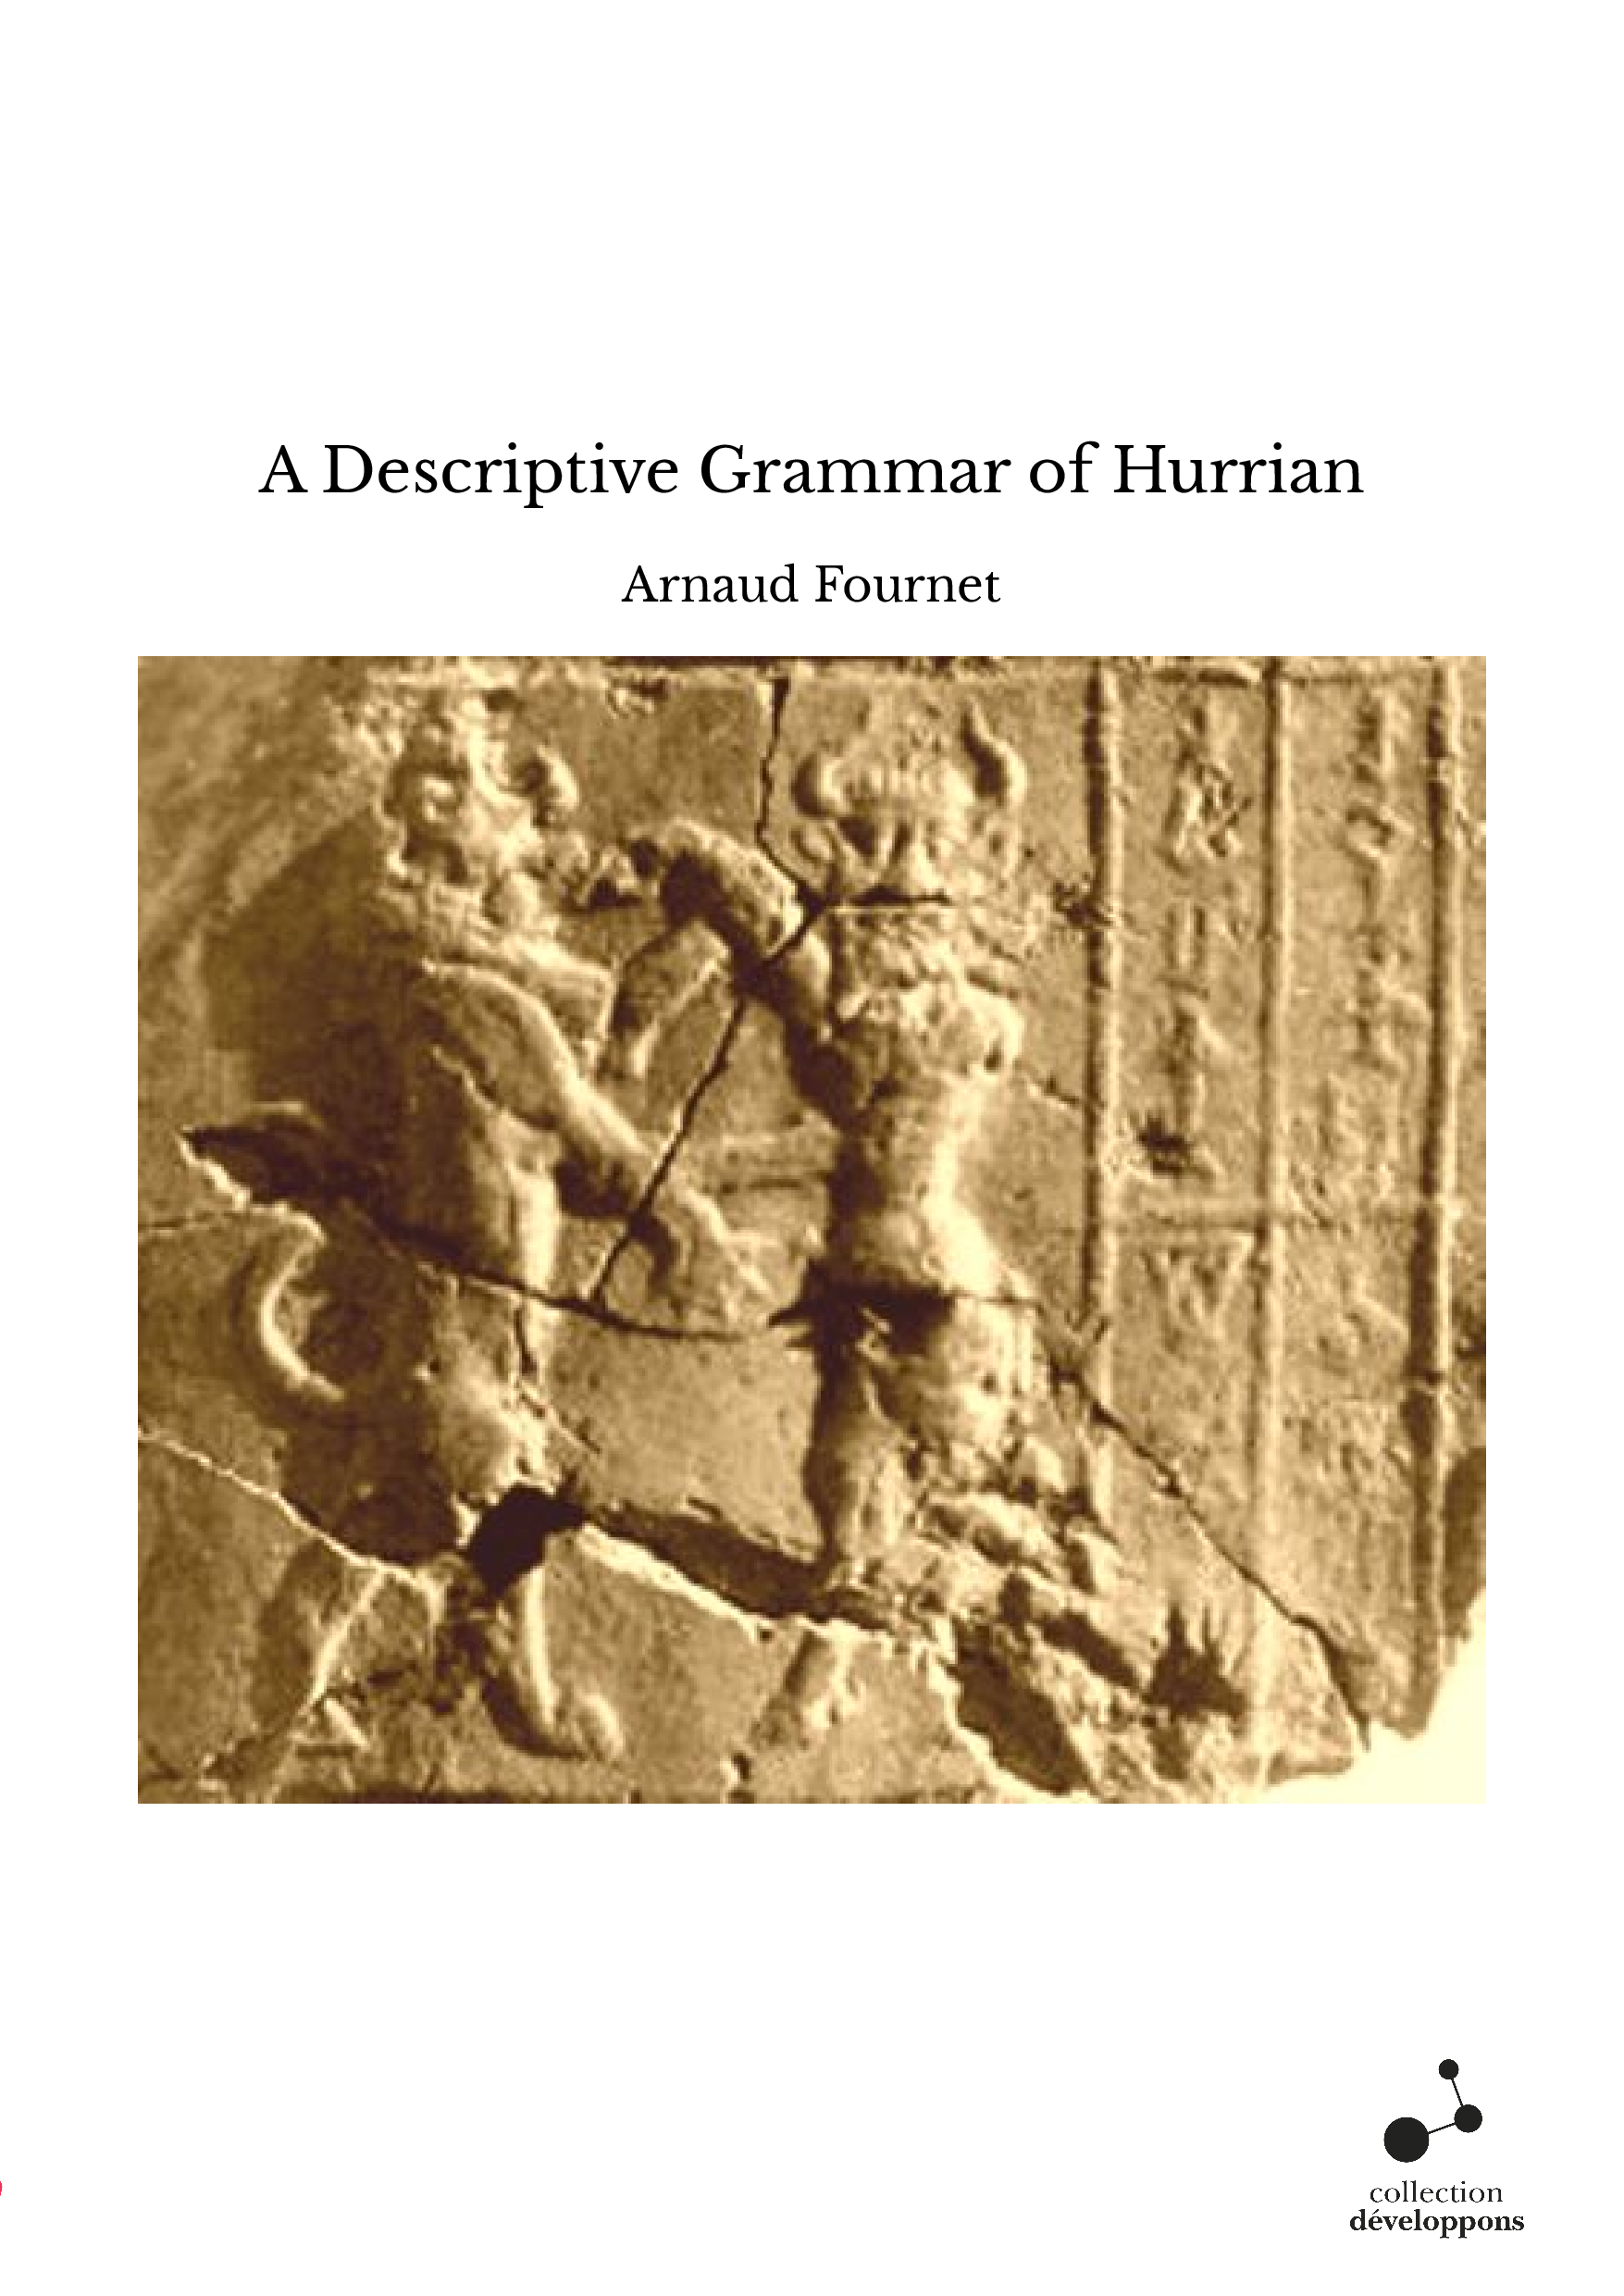 A Descriptive Grammar of Hurrian